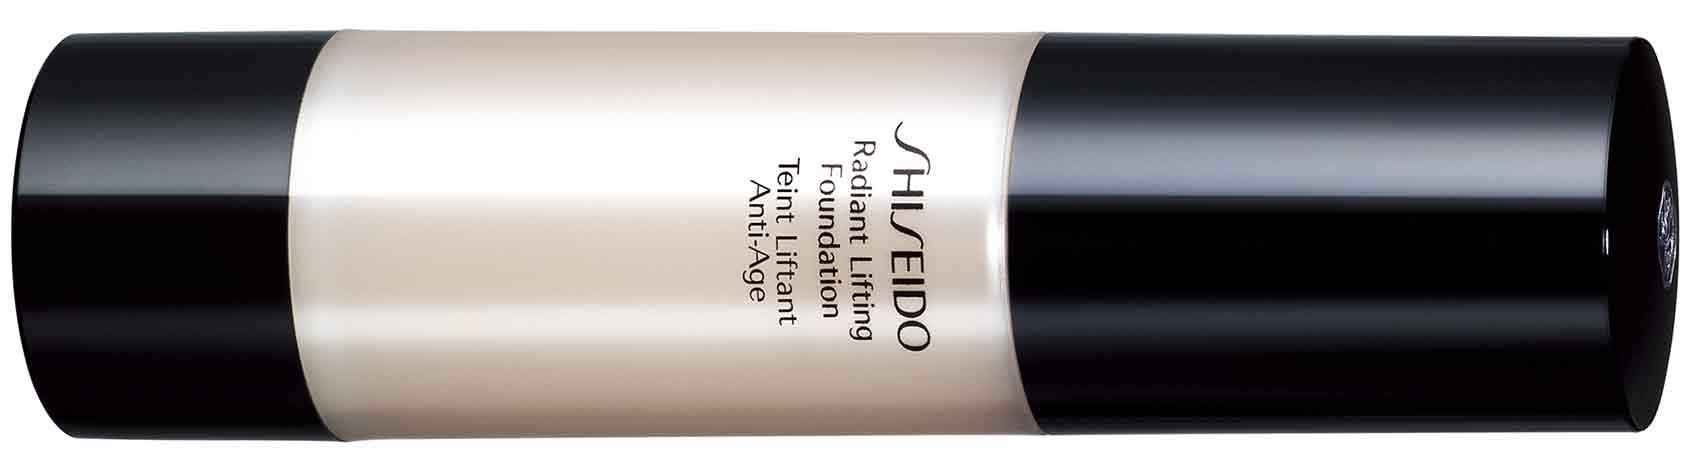 אופנה-Shiseido-RADIANT-LIFTING-FOUNDATION